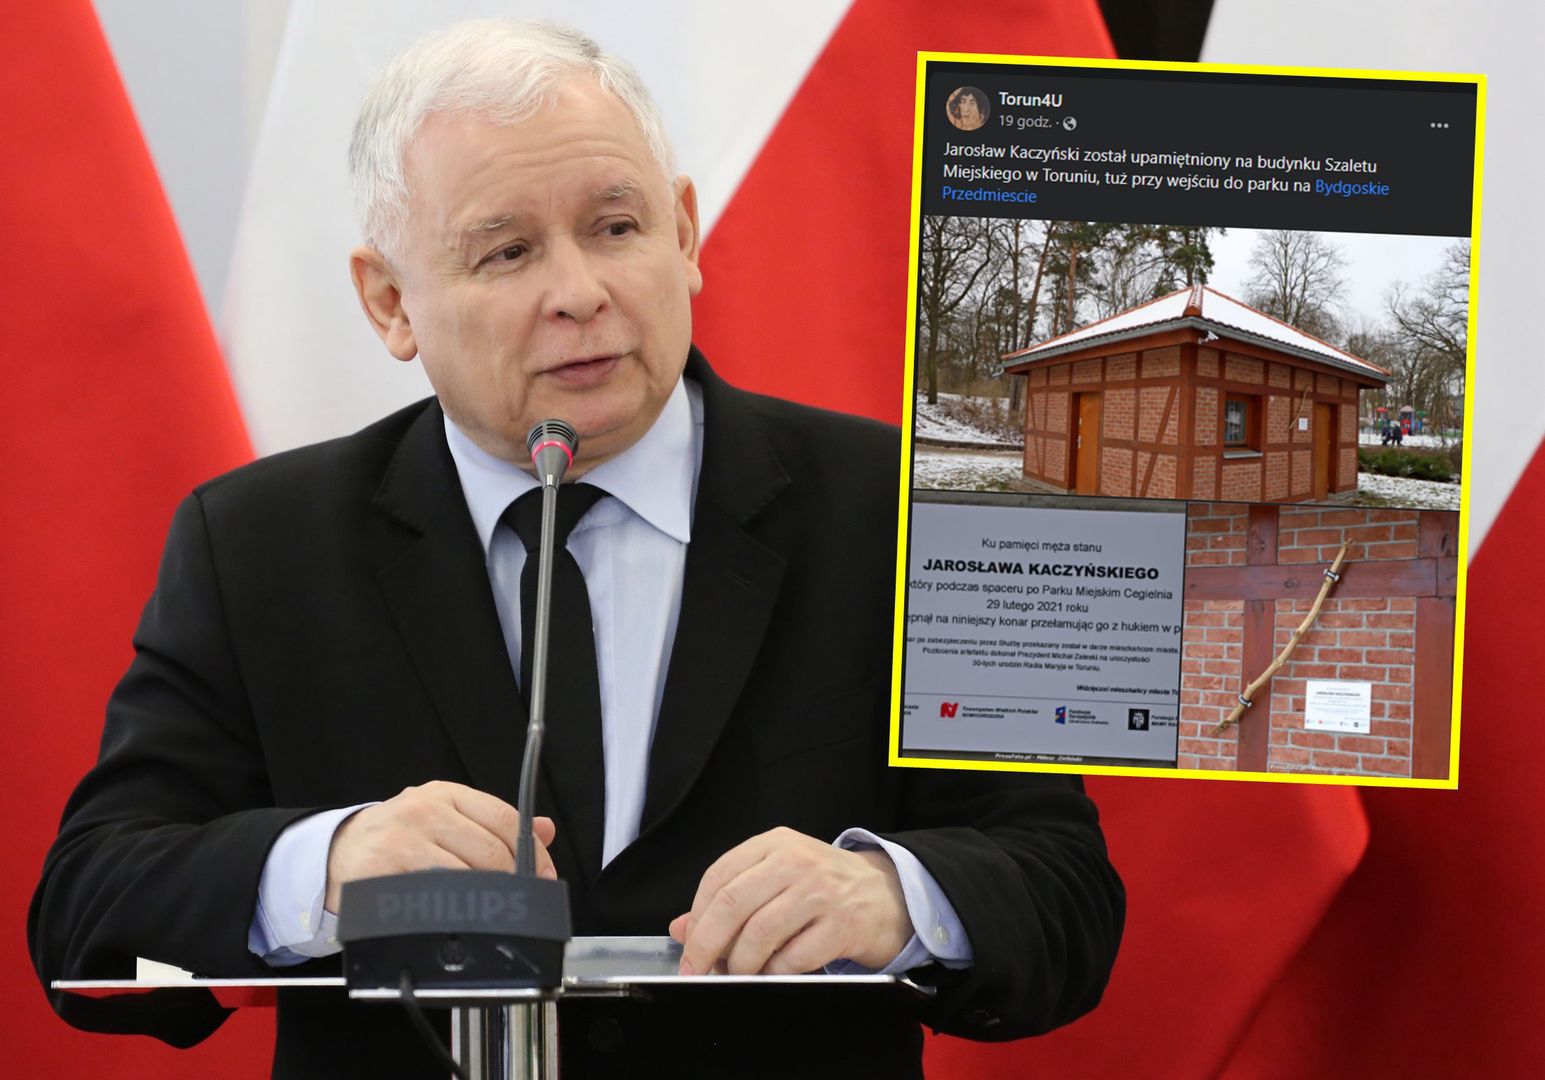 Kaczyński "upamiętniony" w Toruniu. "Ku pamięci męża stanu"